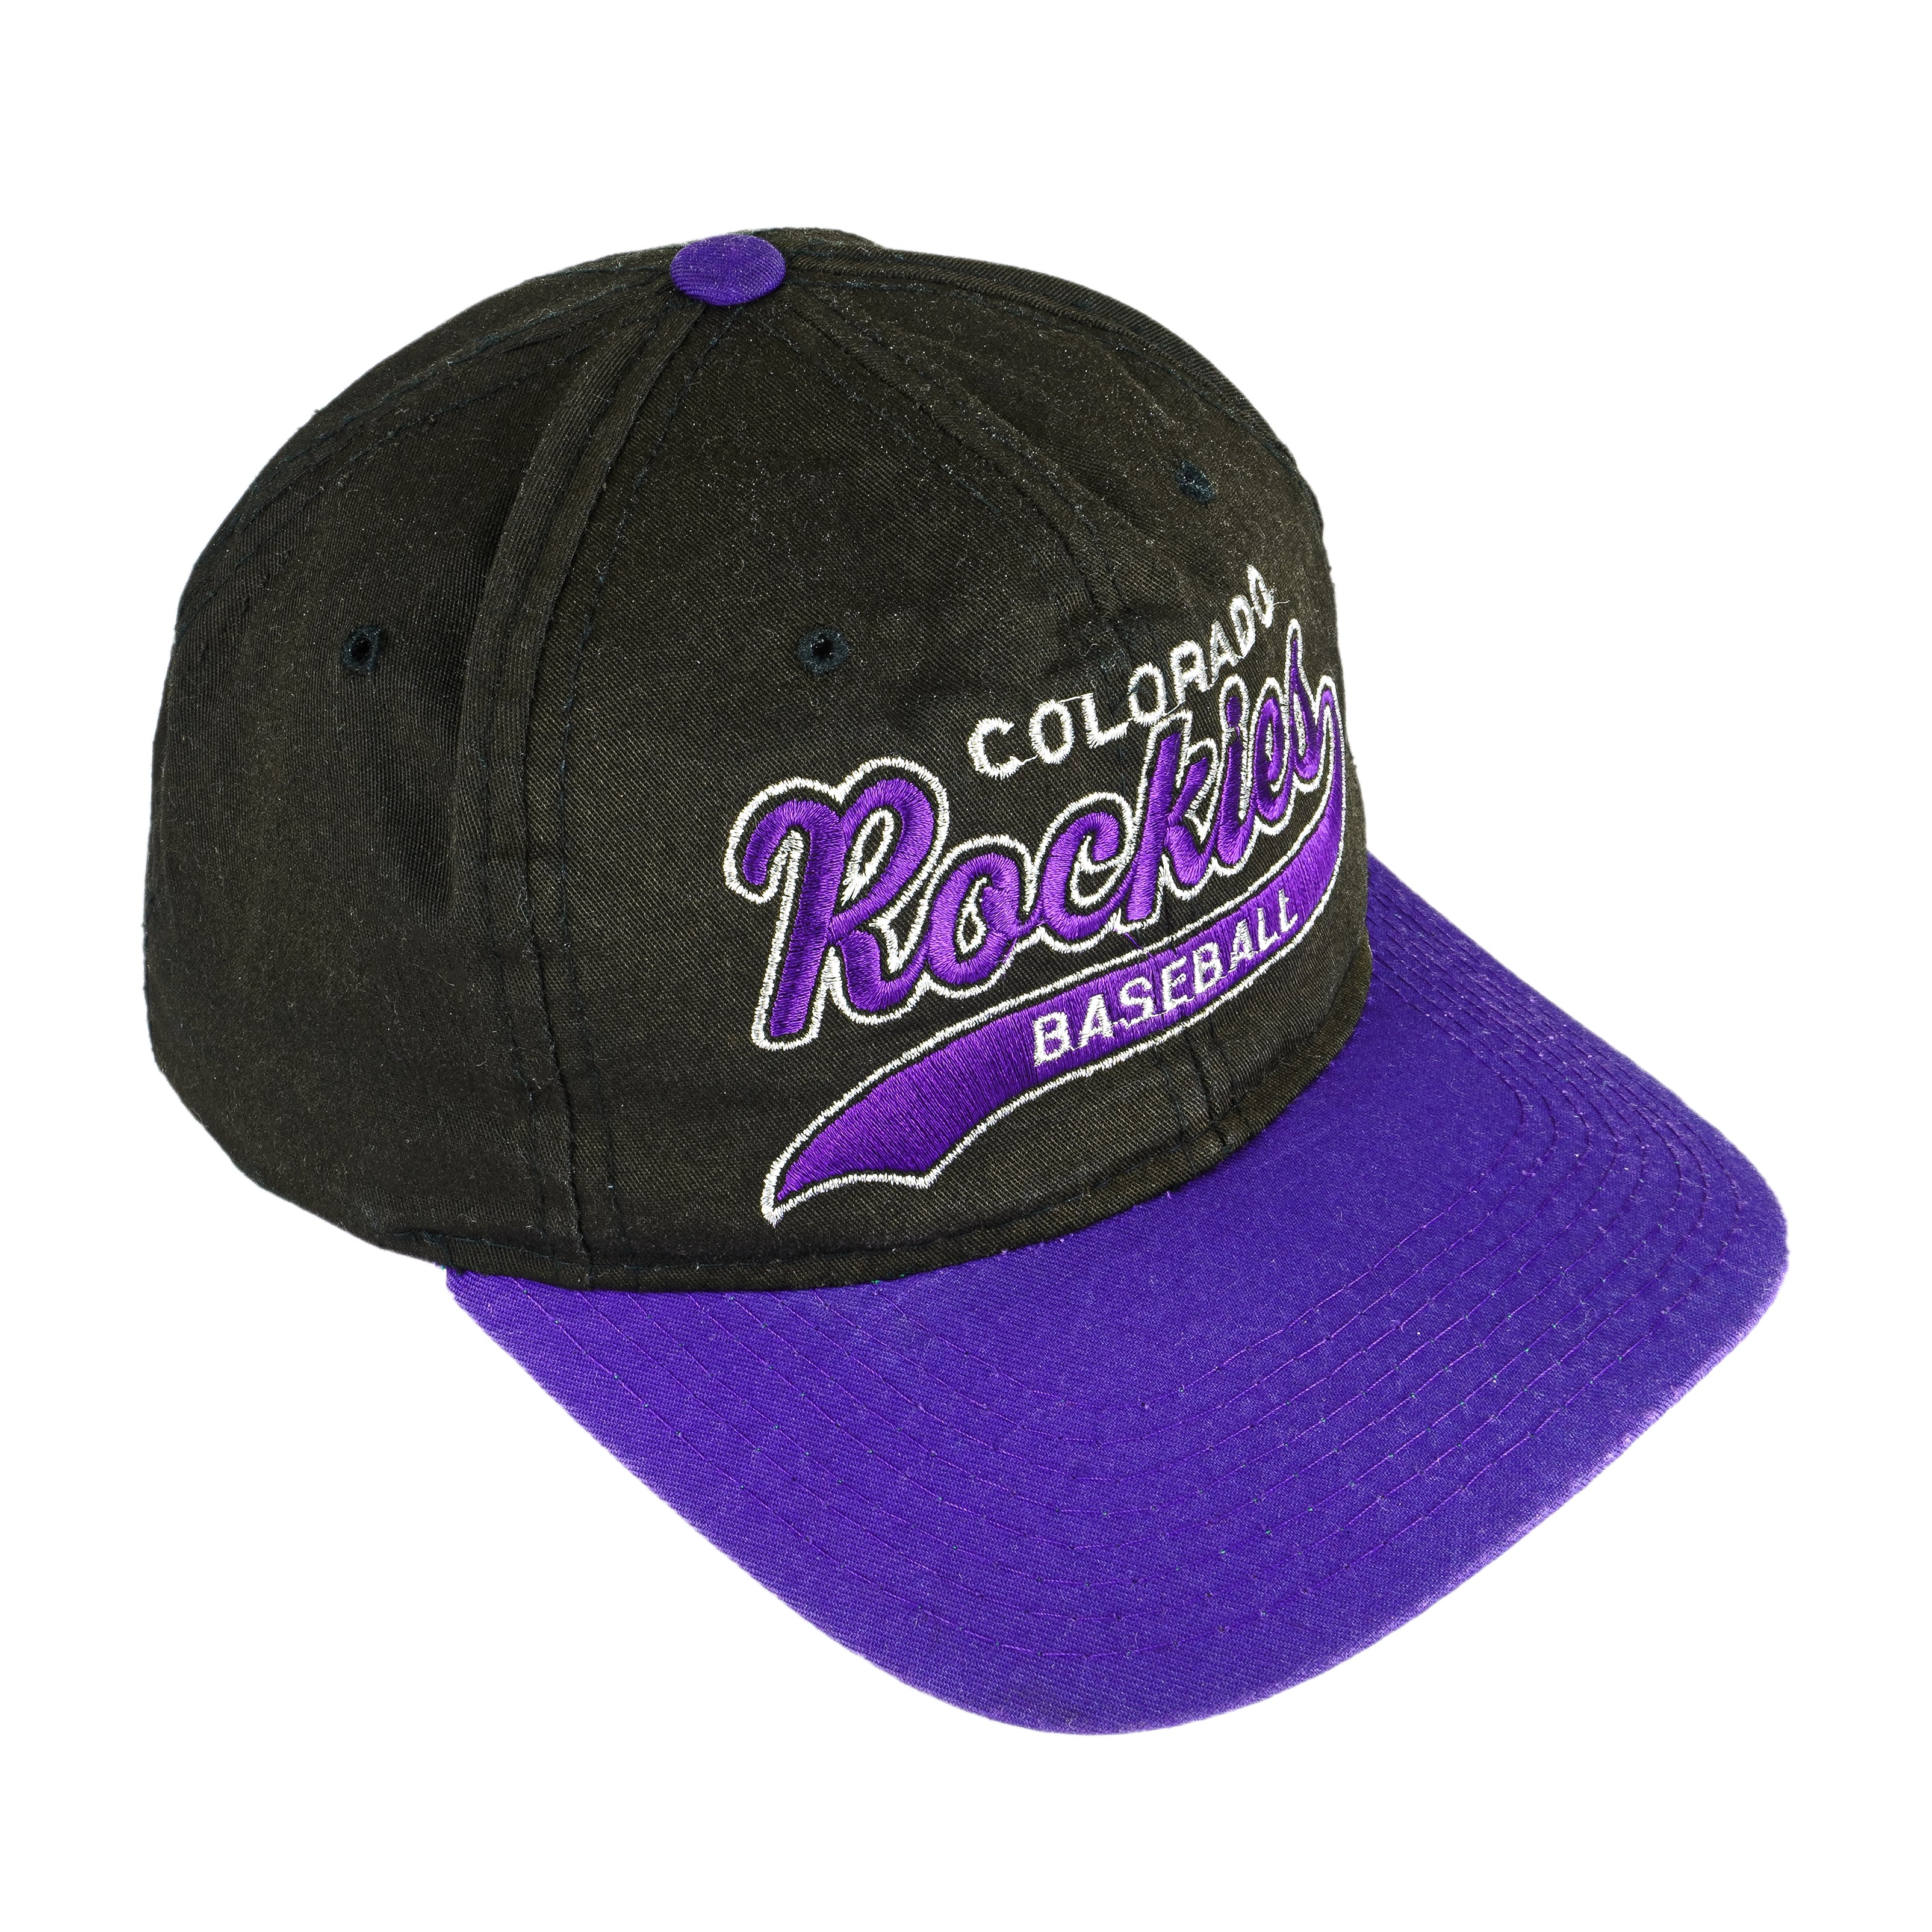 Vintage Starter - Colorado Rockies Snapback Hat 1990s OSFA